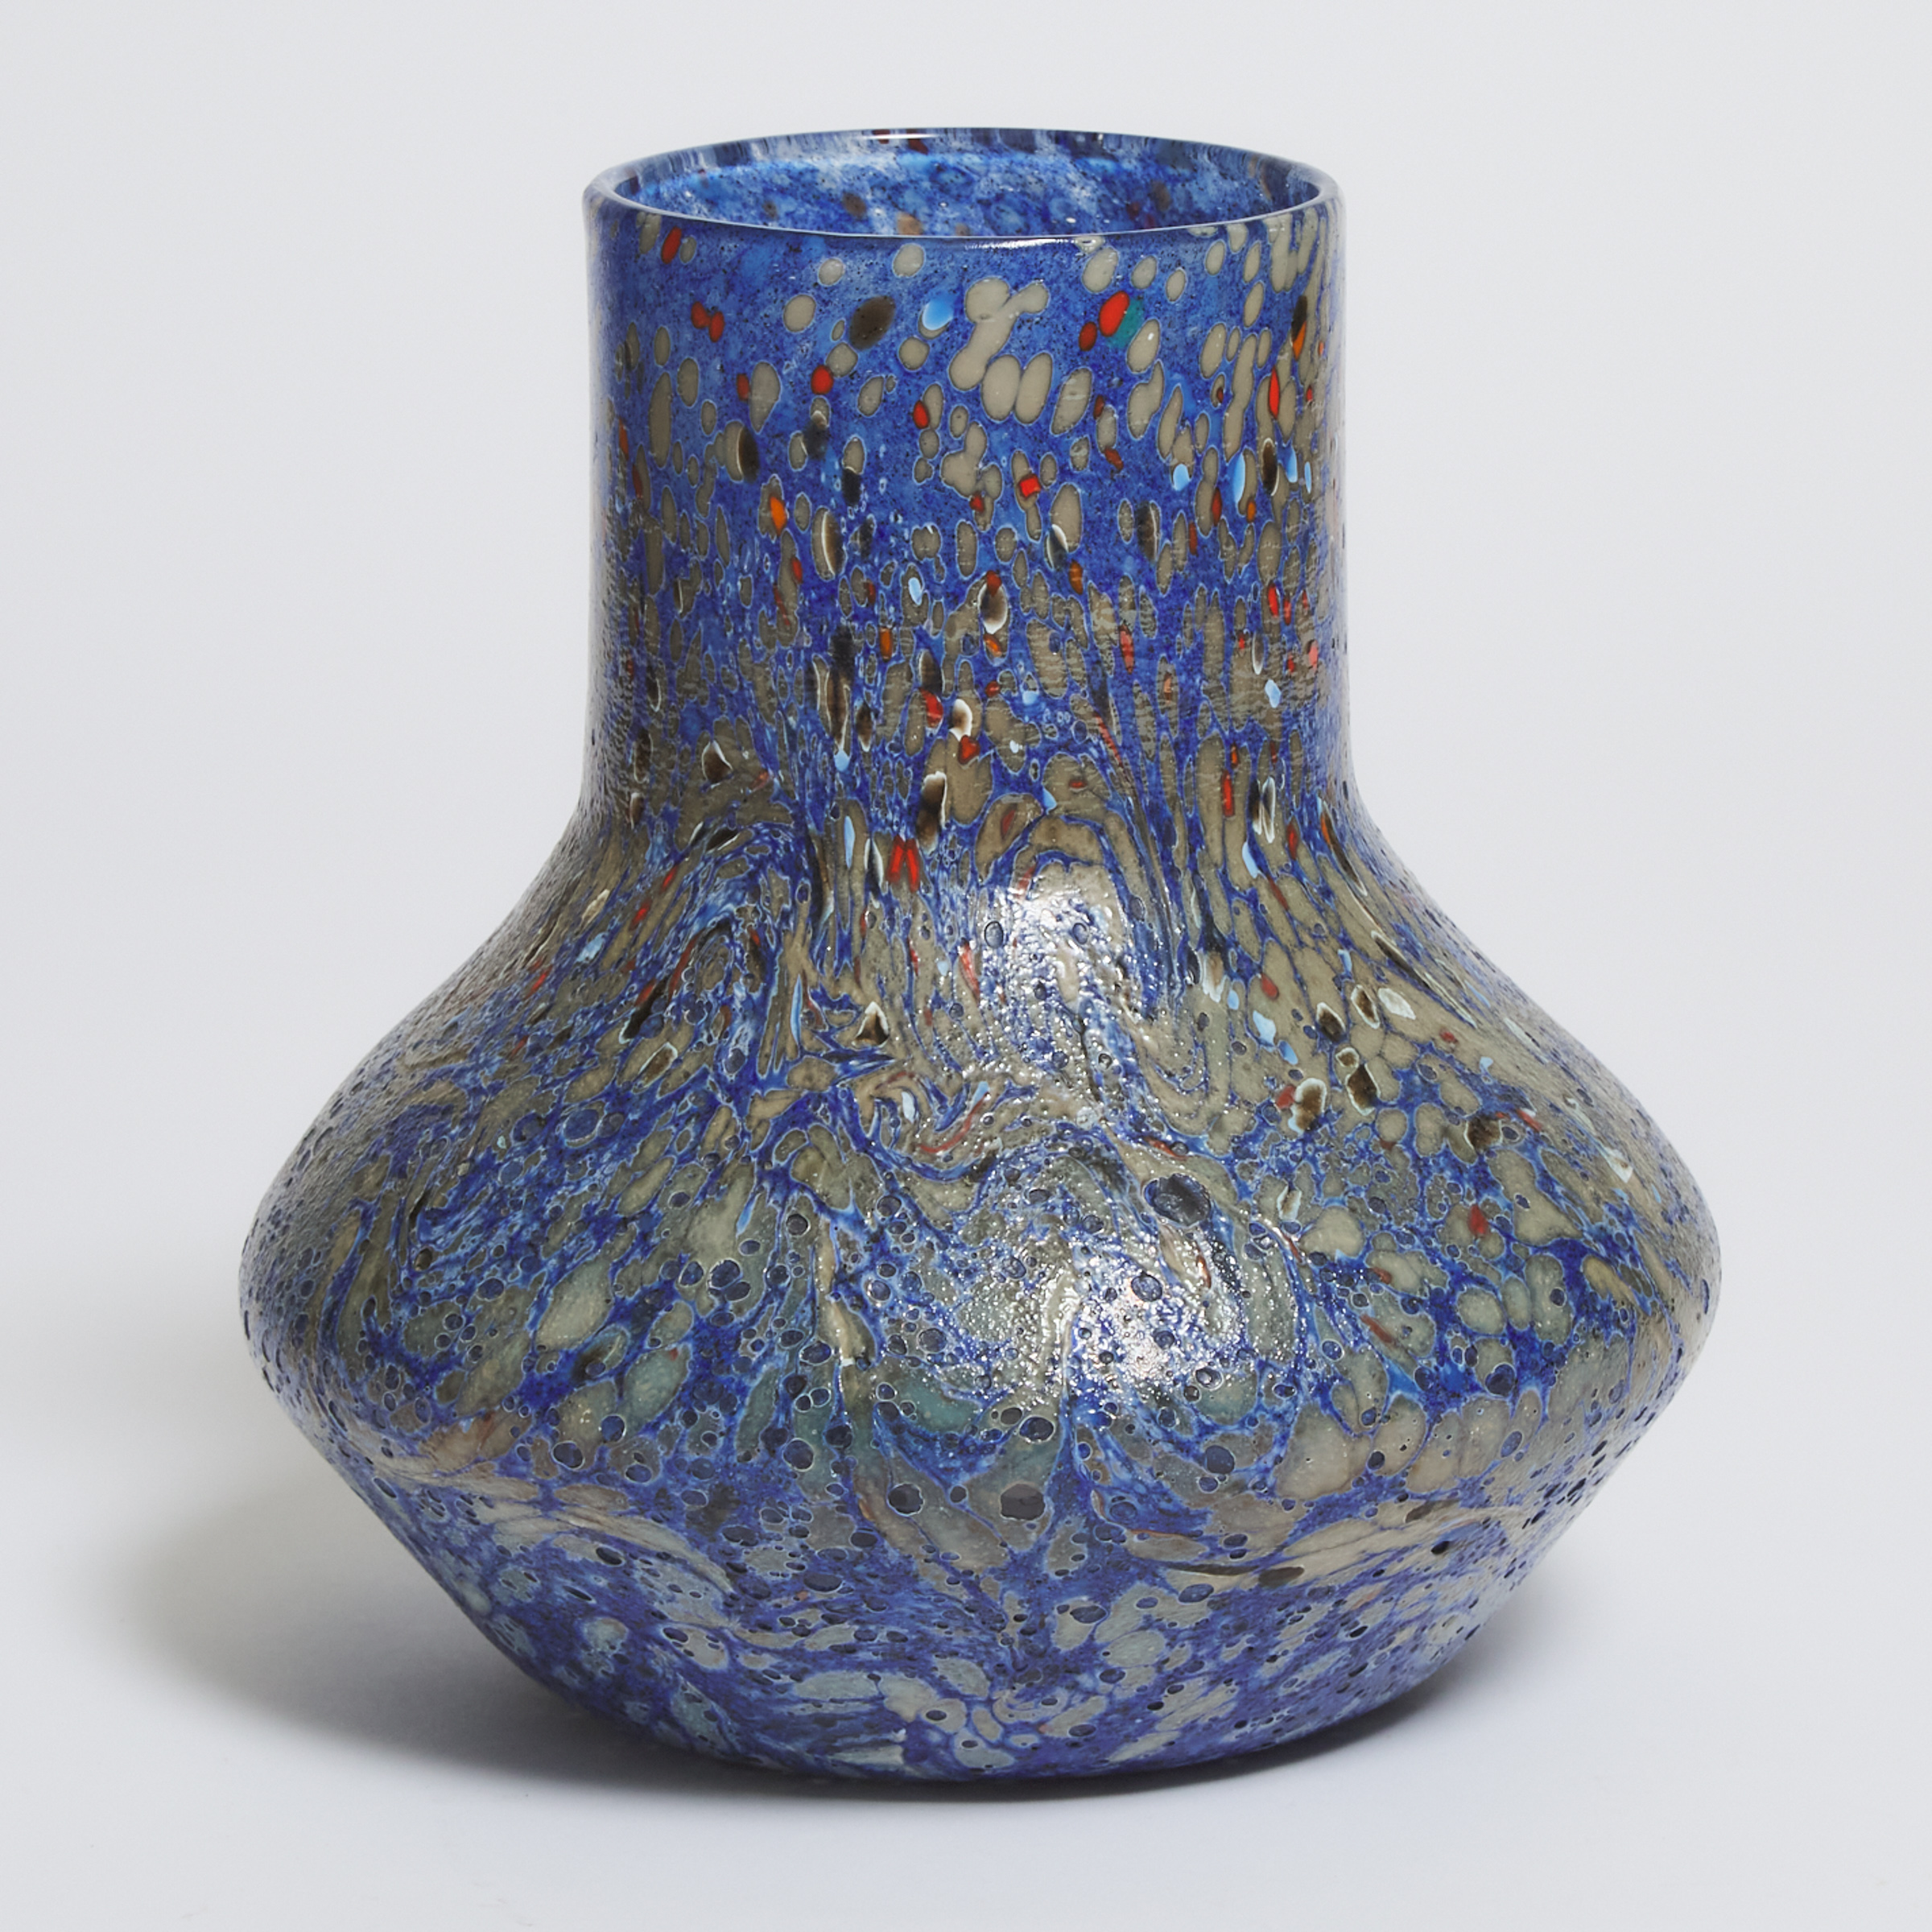 Monart Mottled Blue Glass Vase, c.1930